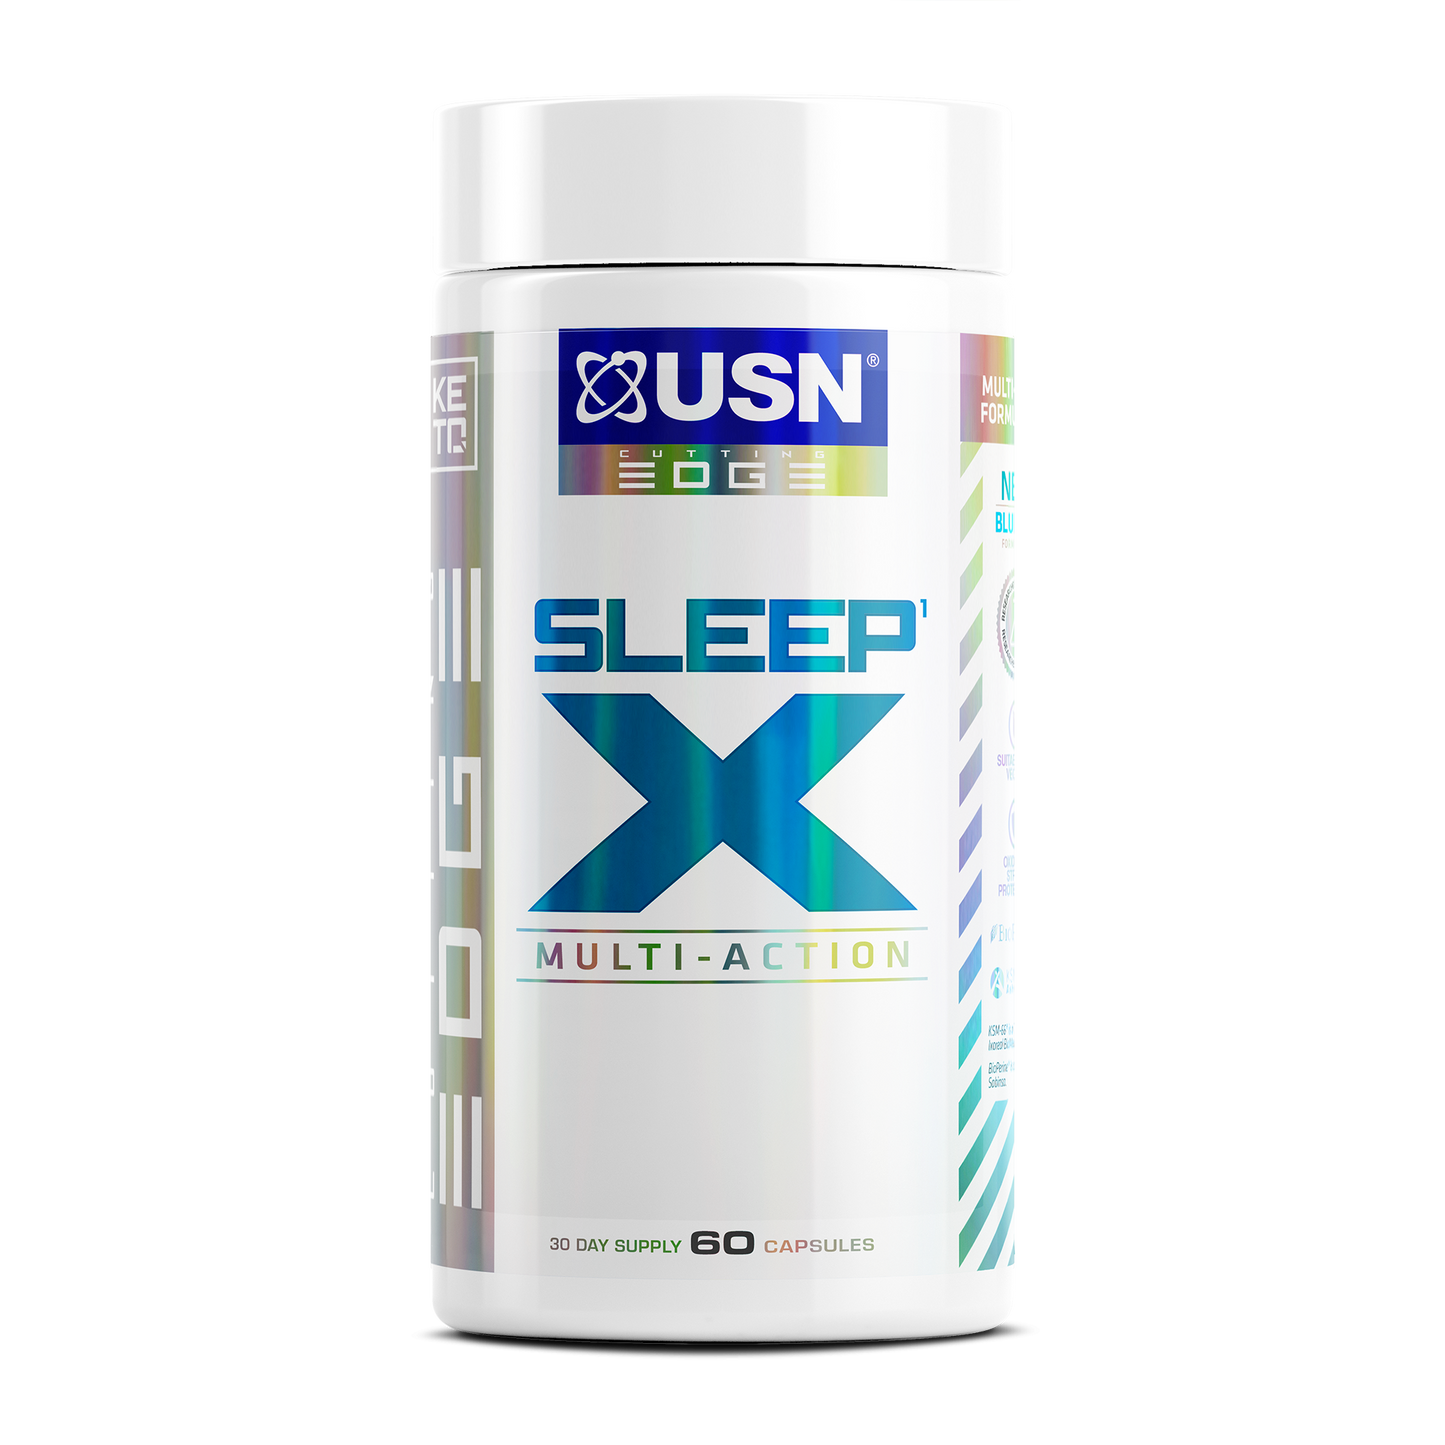 Sleep X - Recovery & Sleep Supplement